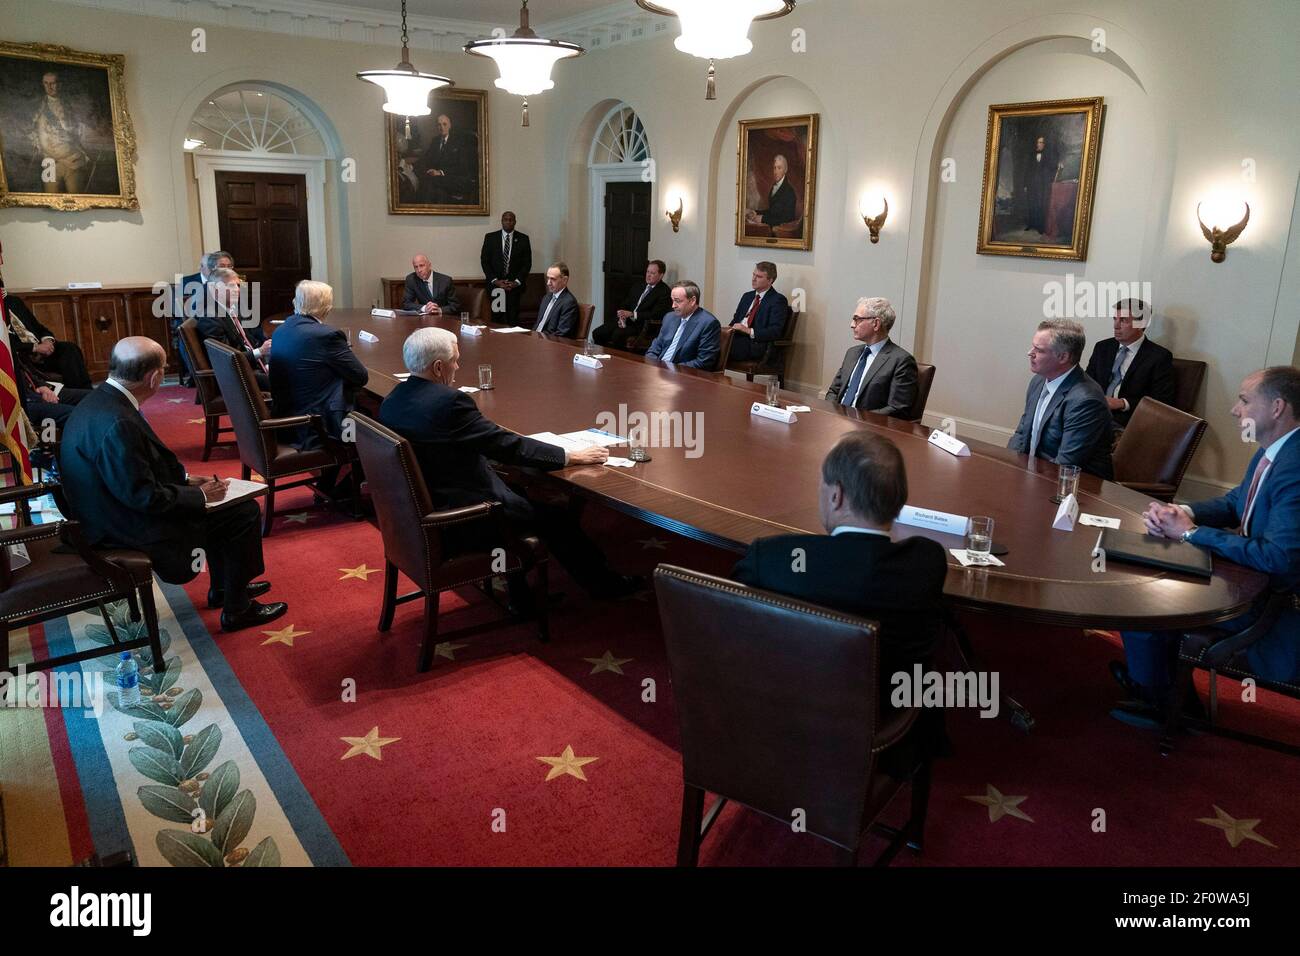 Le président Donald Trump, accompagné du vice-président Mike Pence, rencontre des dirigeants de l'industrie touristique pour discuter des réponses économiques et de soins de santé à l'épidémie du coronavirus (COVID-19), le mardi 17 2020 mars, dans la salle du Cabinet de la Maison Blanche. Banque D'Images